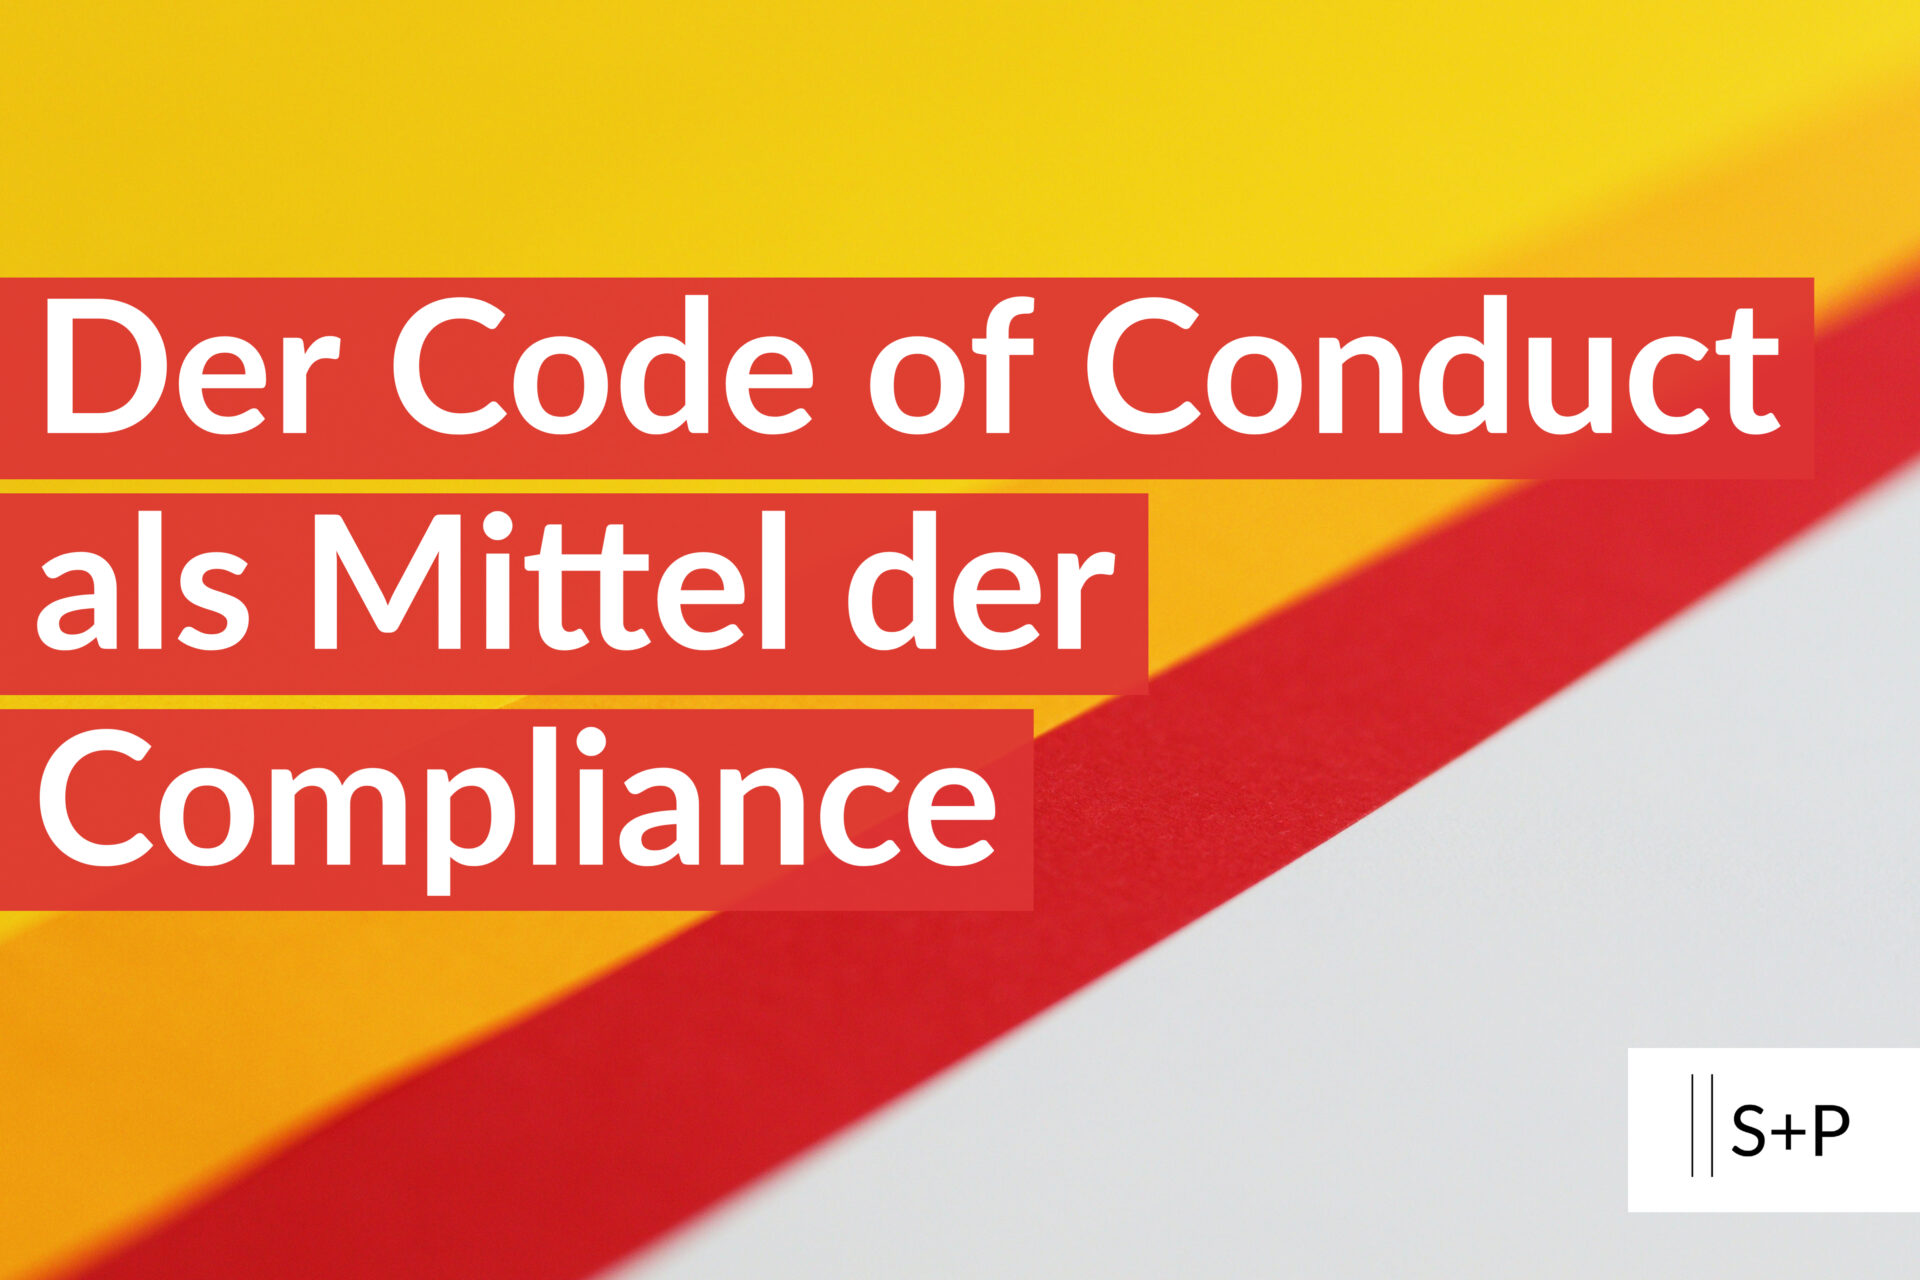 Der Code of Conduct als Mittel der Compliance